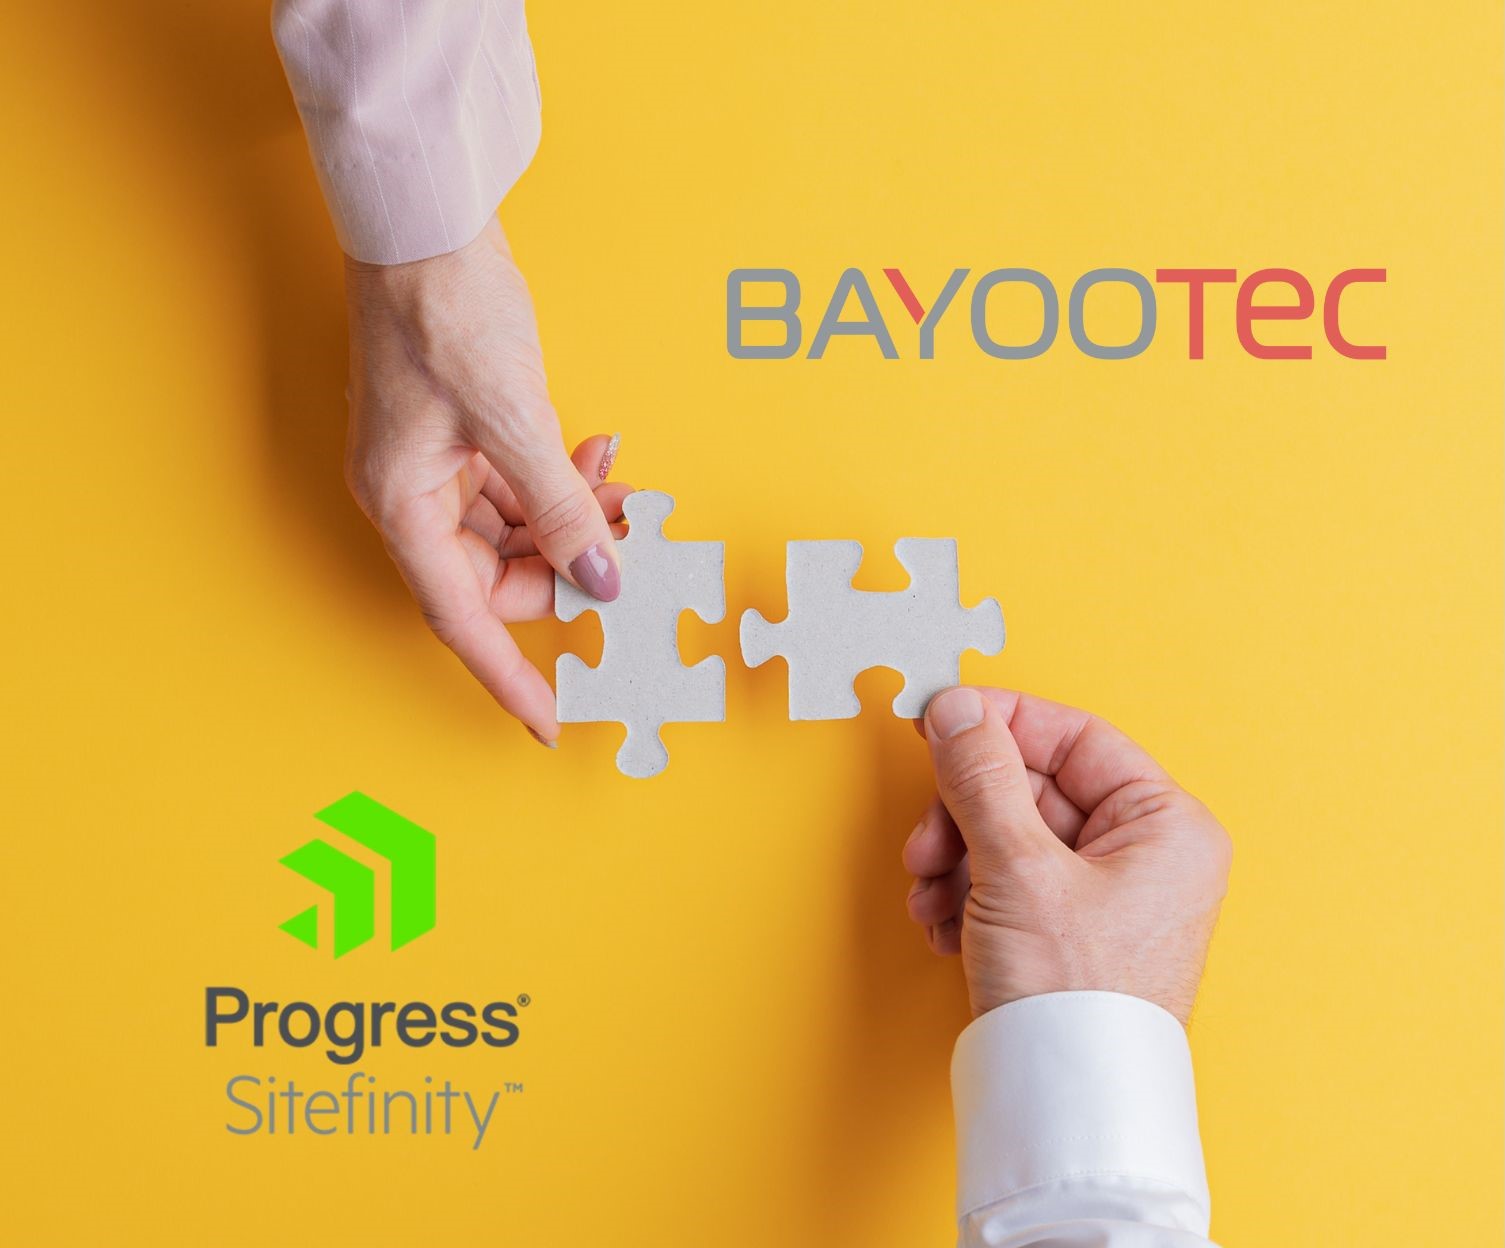 Progress Sitefinity x BAYOOTEC